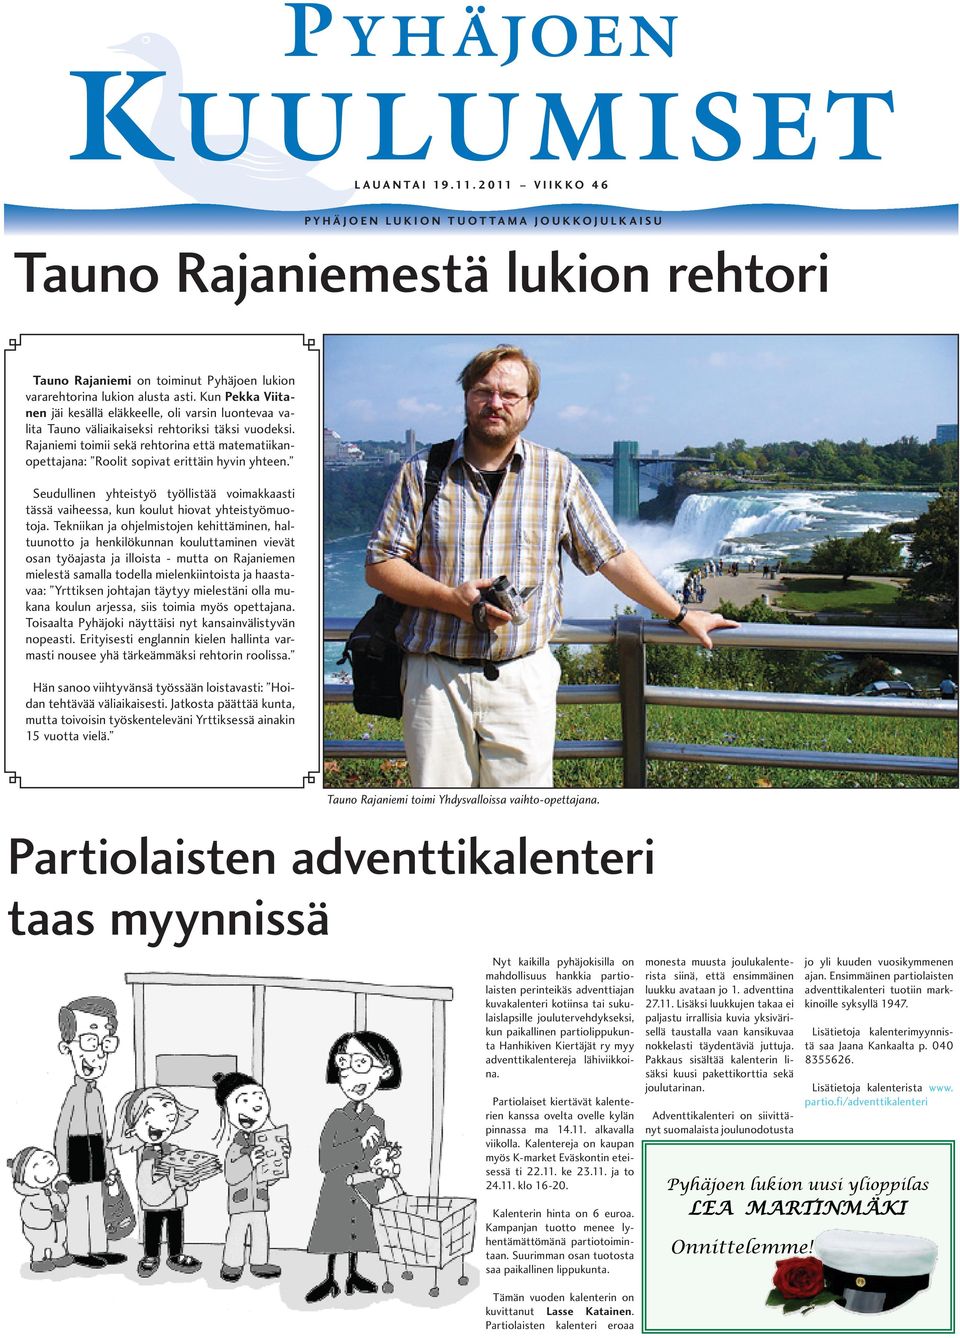 Kun Pekka Viitanen jäi kesällä eläkkeelle, oli varsin luontevaa valita Tauno väliaikaiseksi rehtoriksi täksi vuodeksi.